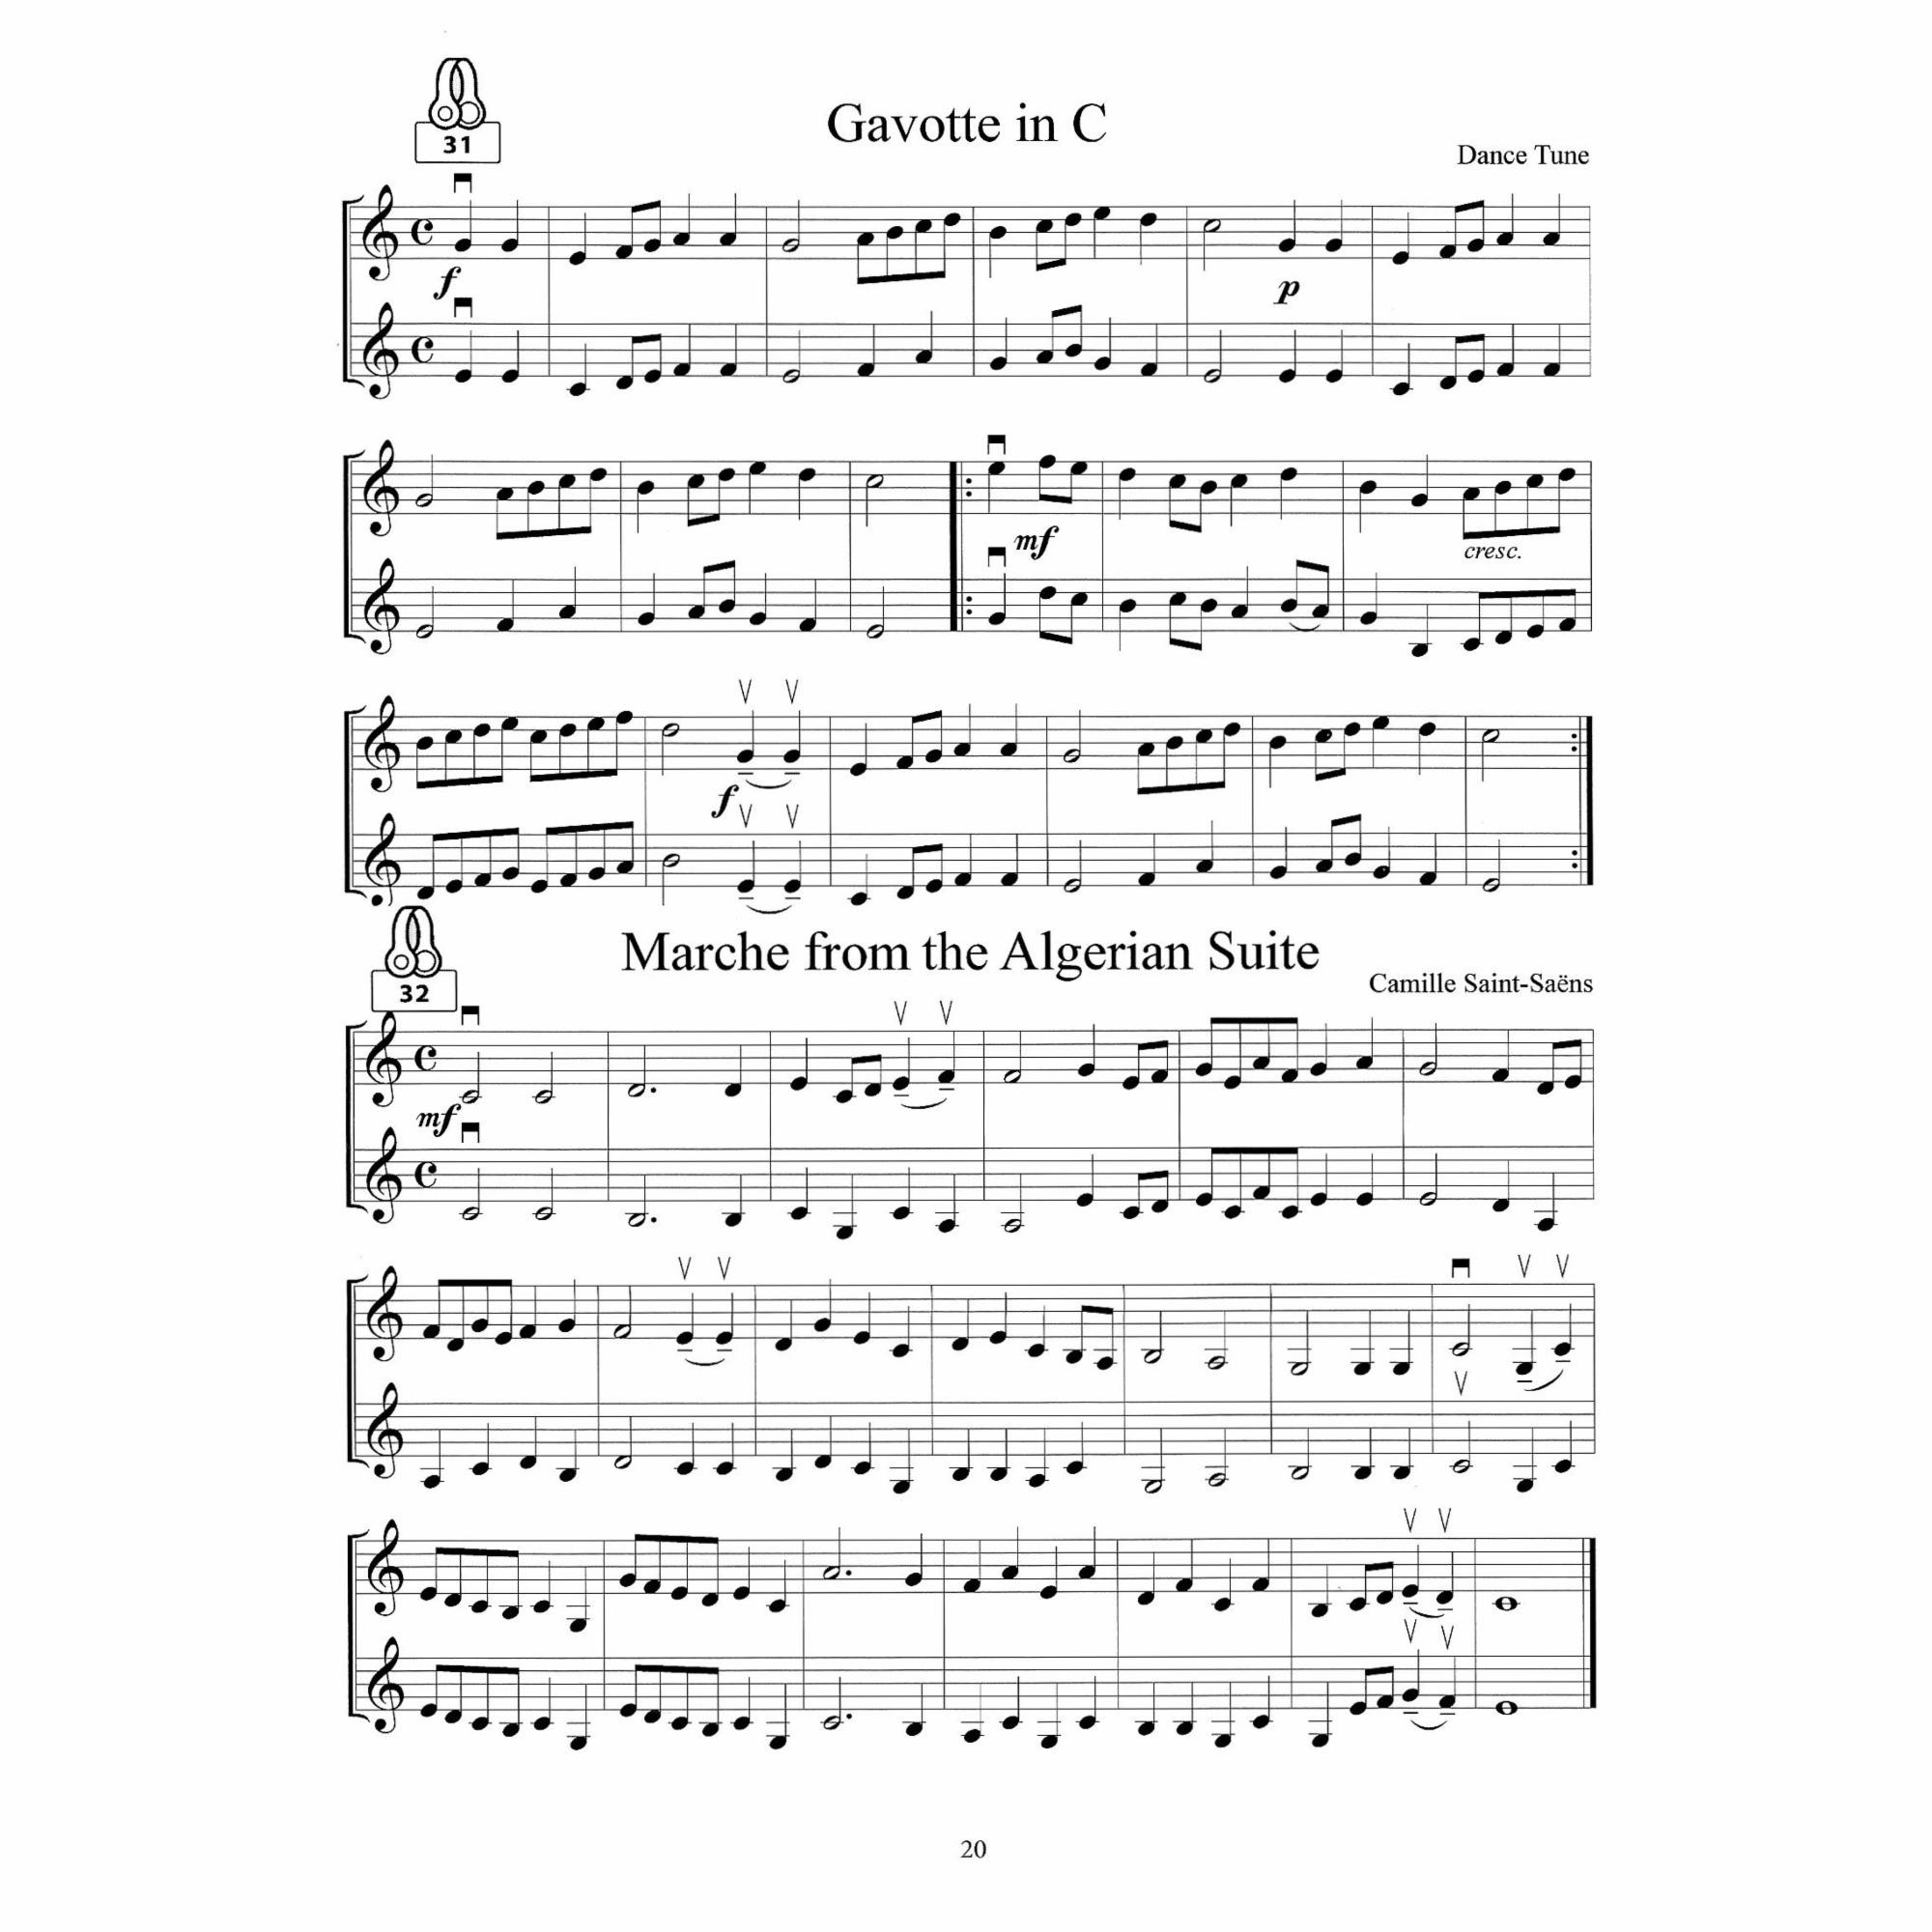 Sample: Violins (Pg. 20)